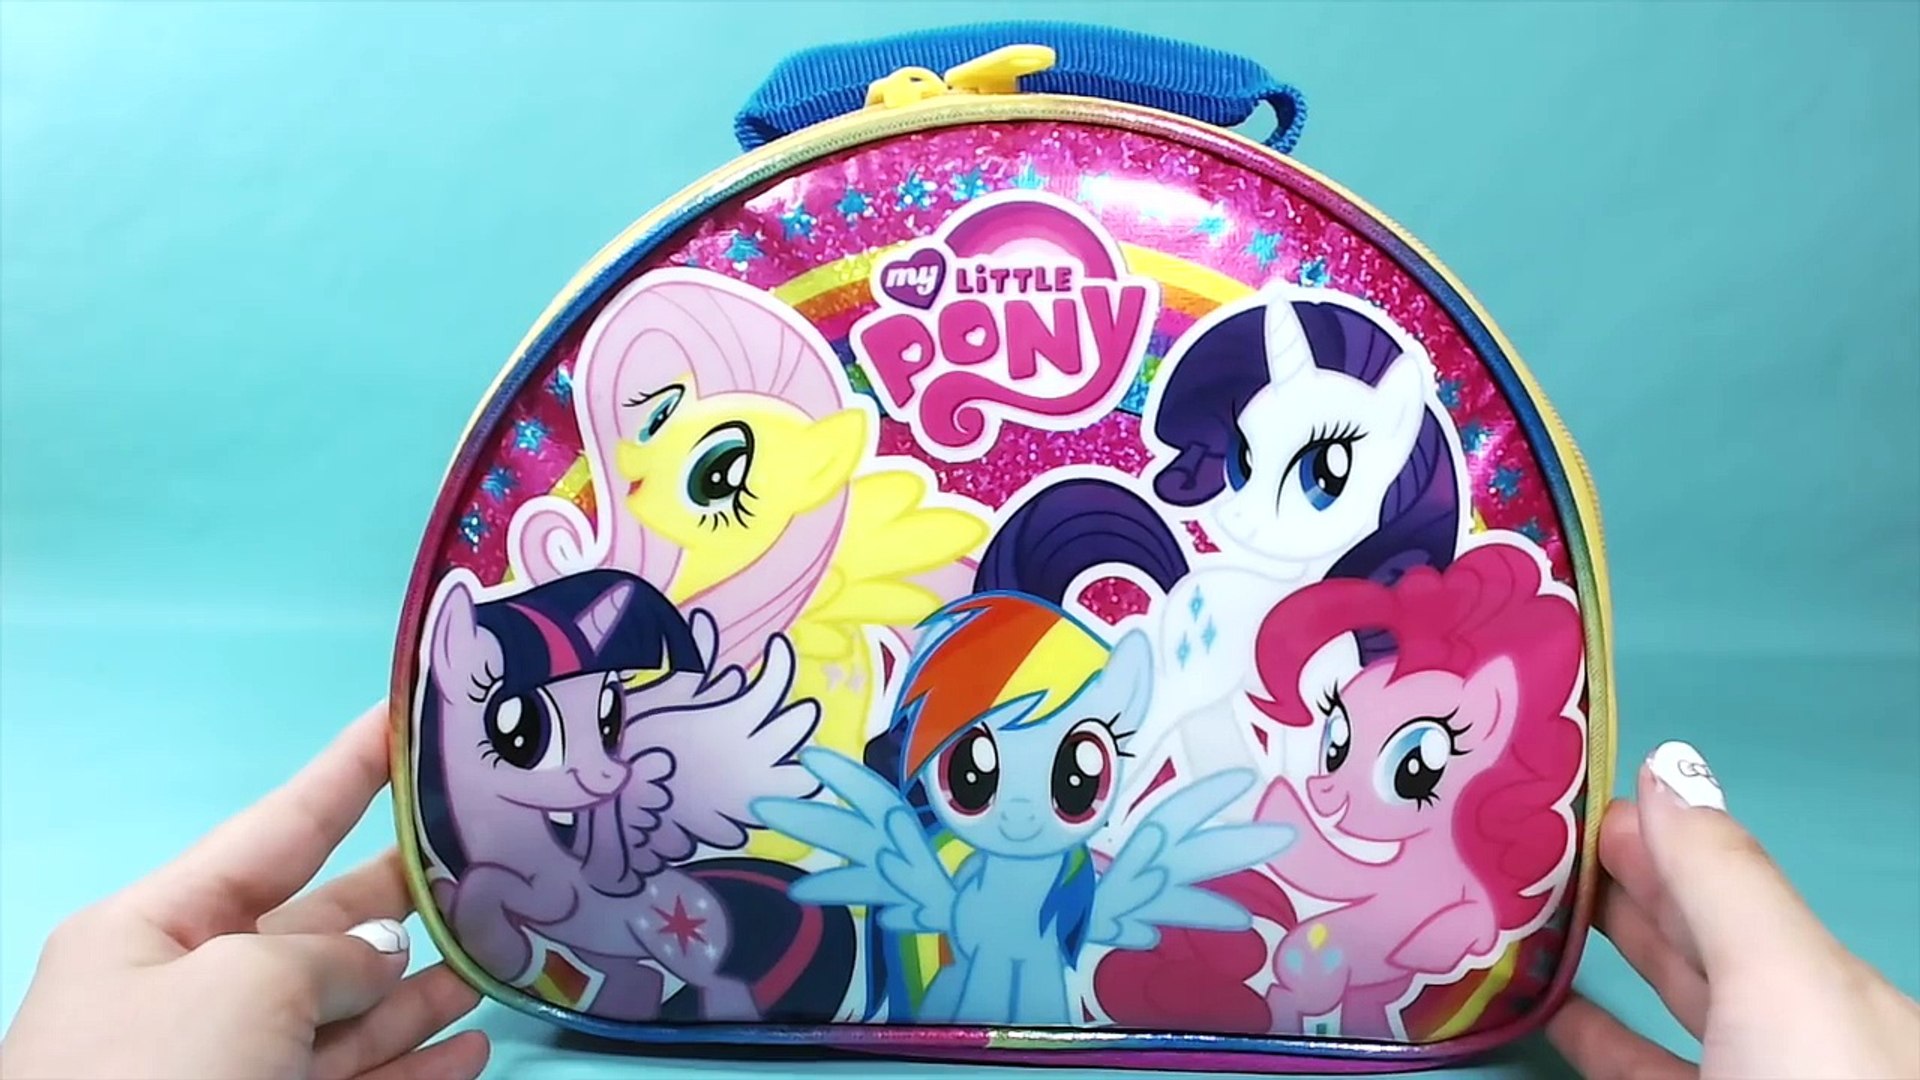 My Little Pony Lunch Box Surprises with MLP, Shopkins, Barbie Surprises 